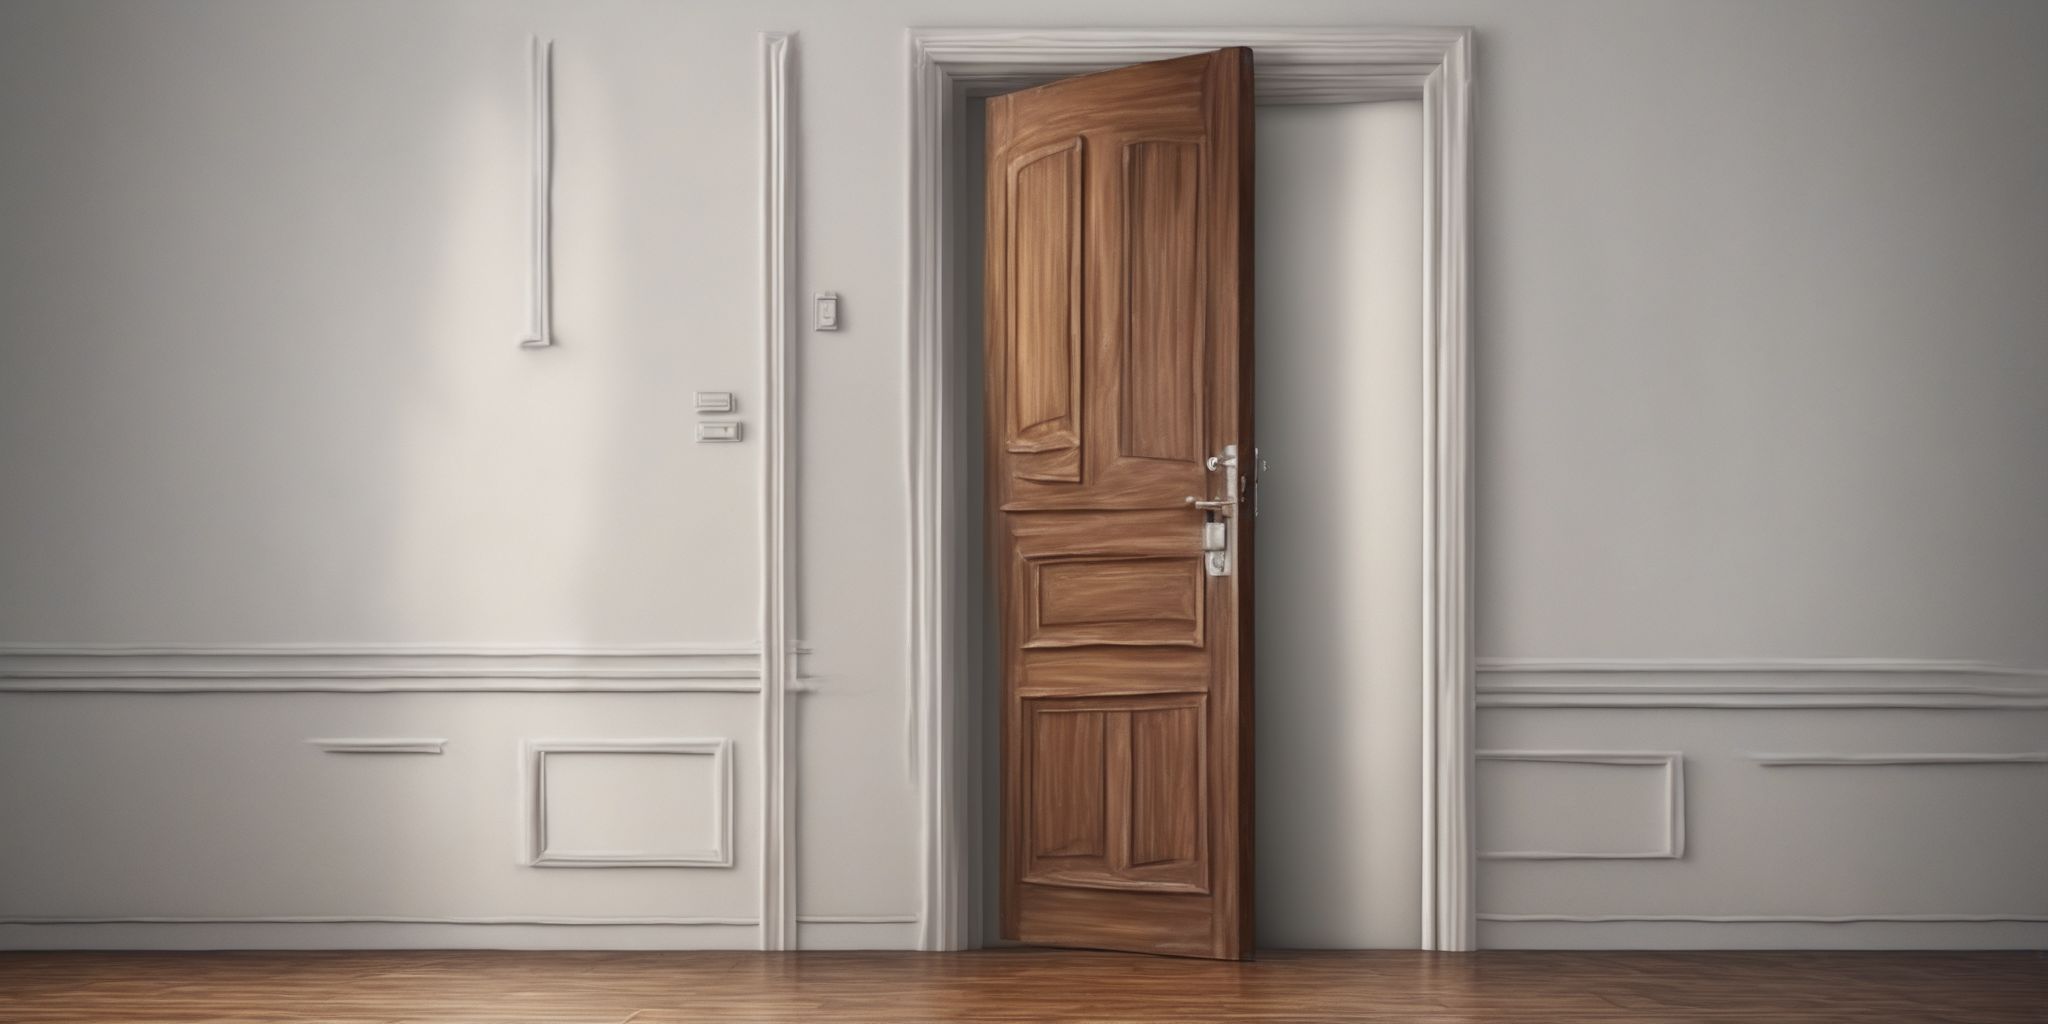 Open door  in realistic, photographic style